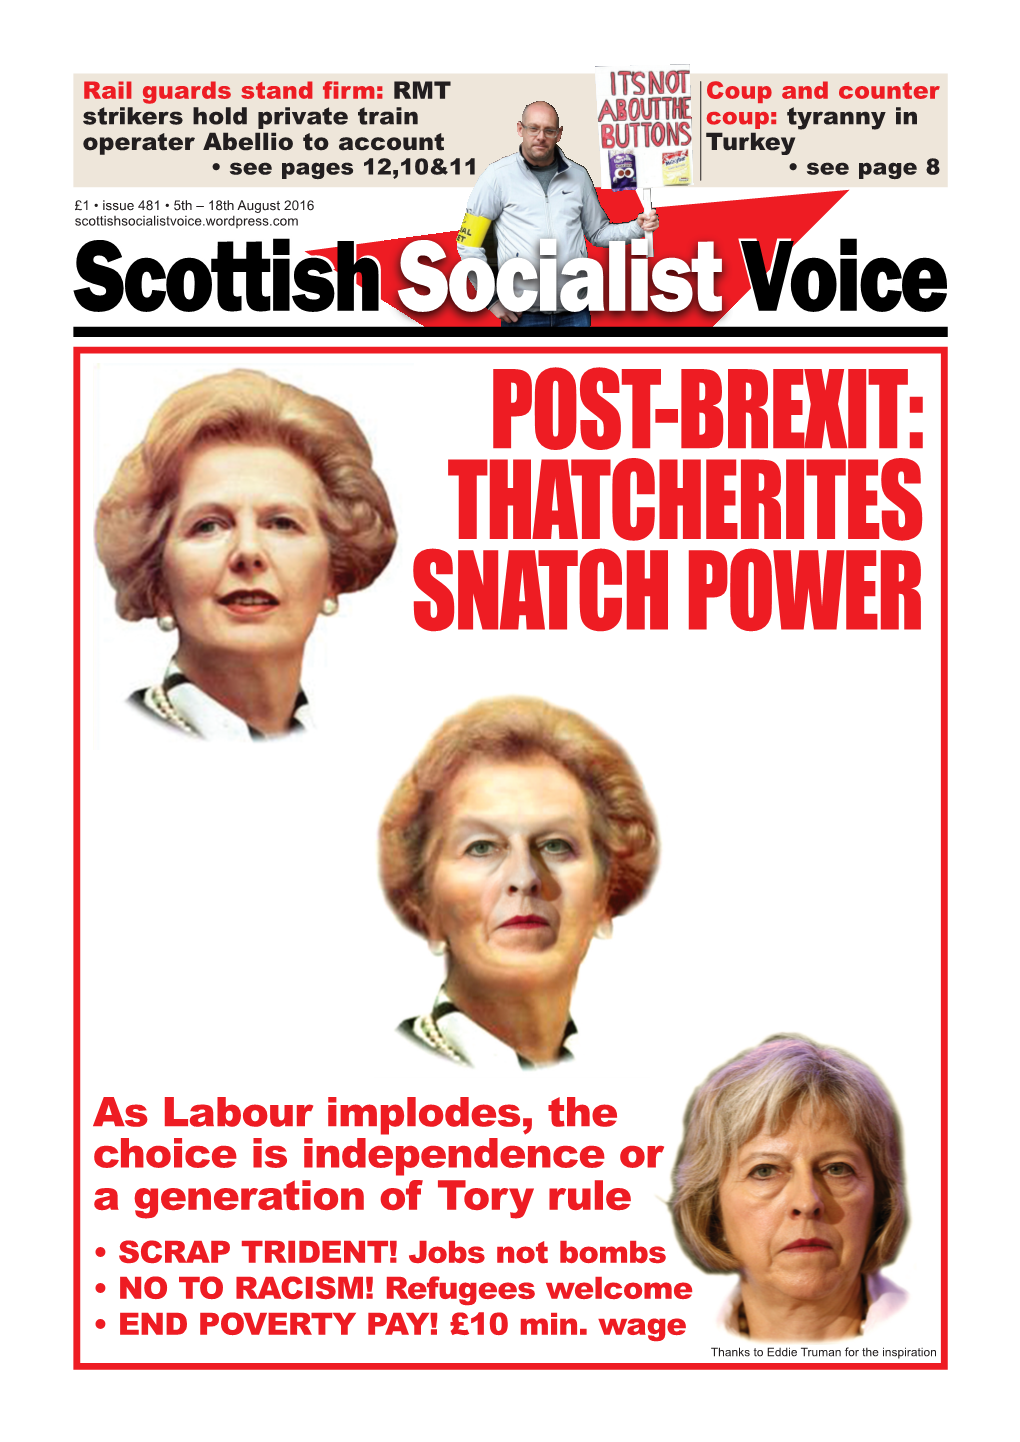 Post-Brexit: Thatcherites Snatch Power